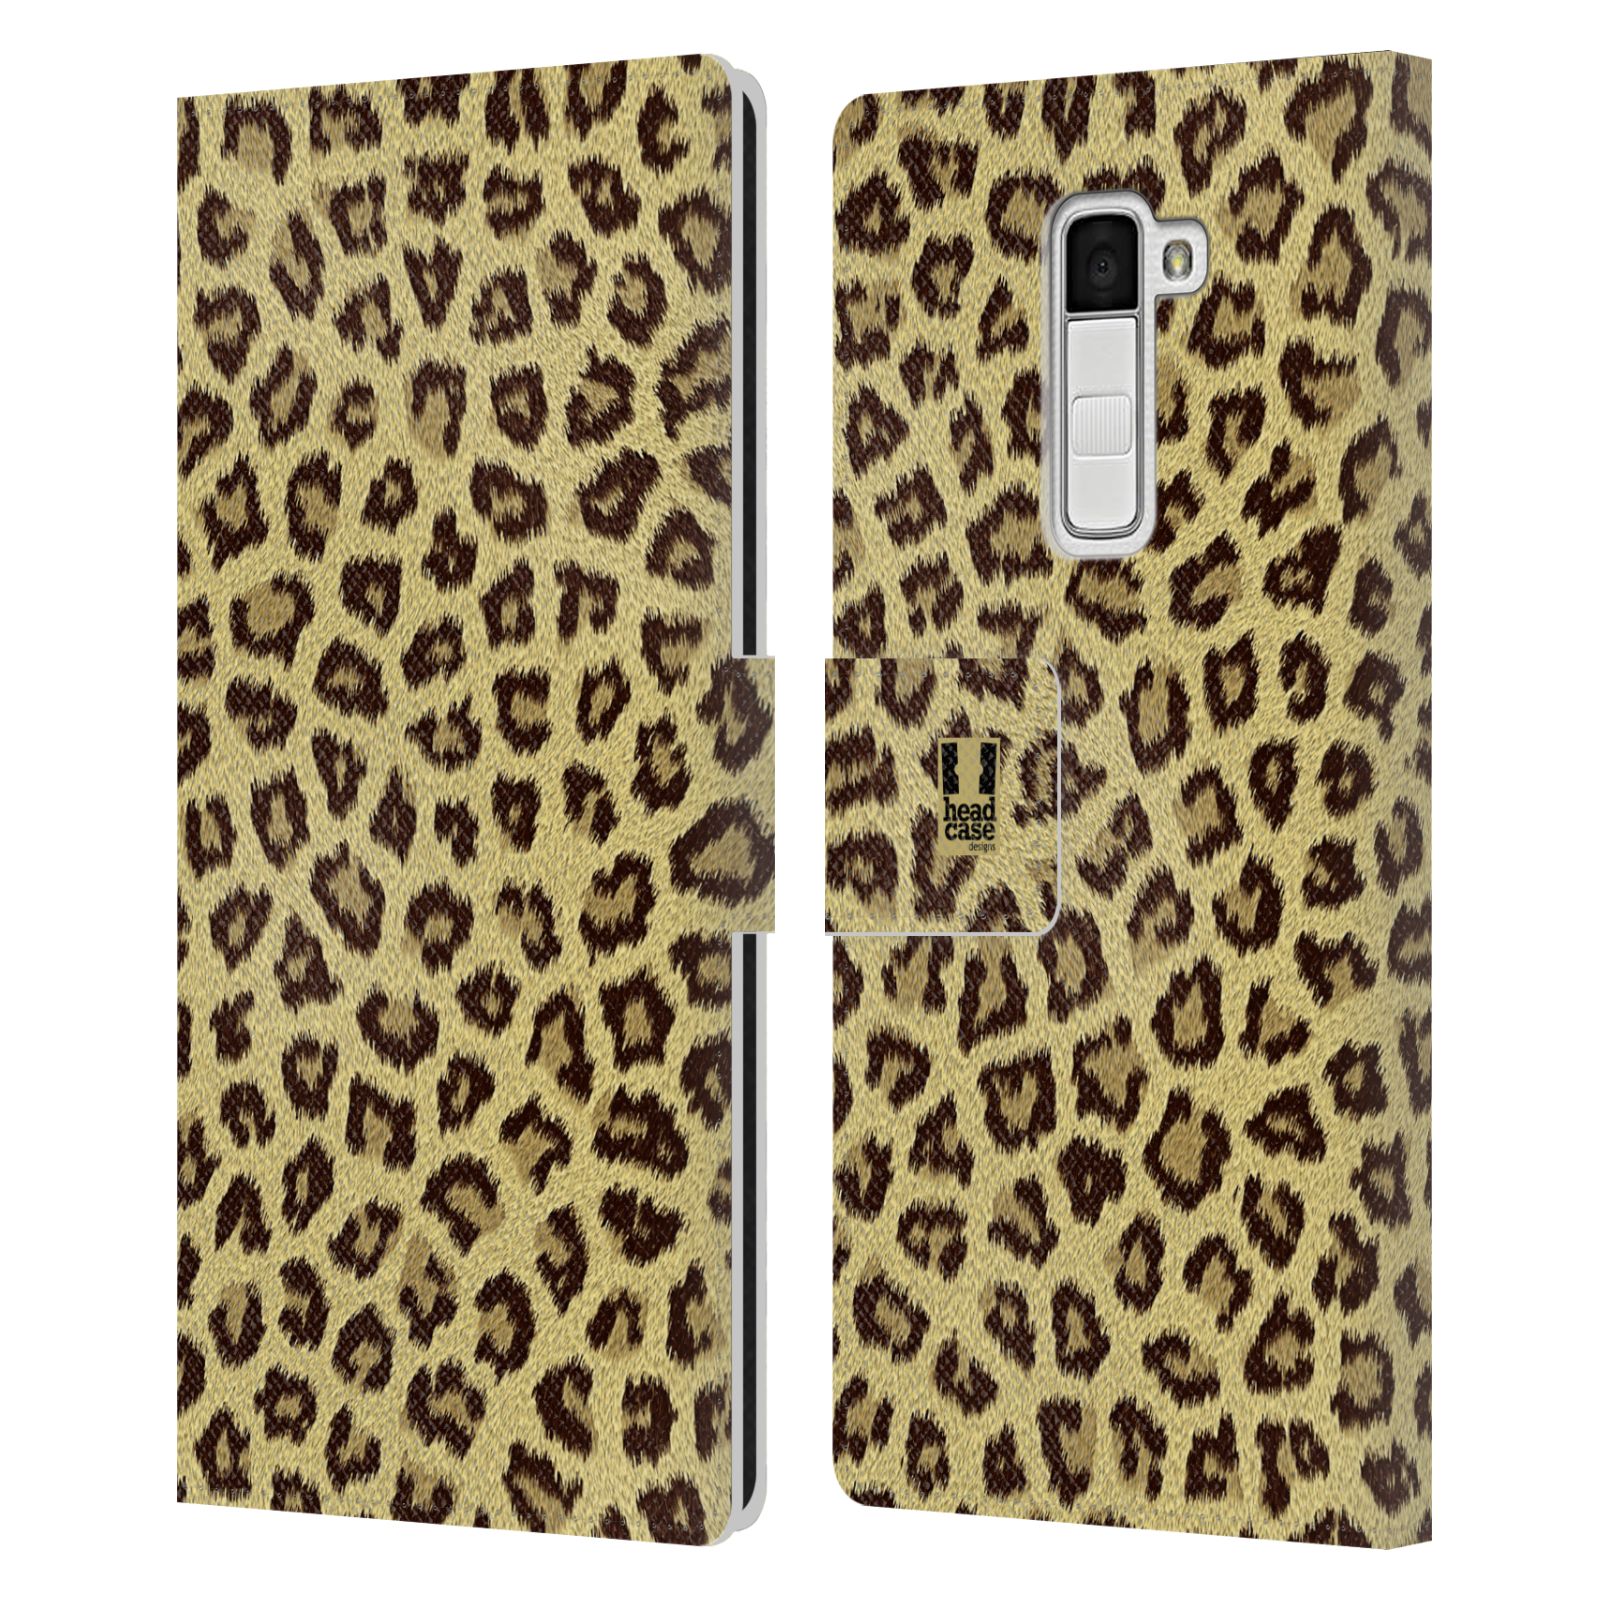 HEAD CASE Flipové pouzdro pro mobil LG K10 zvíře srst divoká kolekce jaguár, gepard